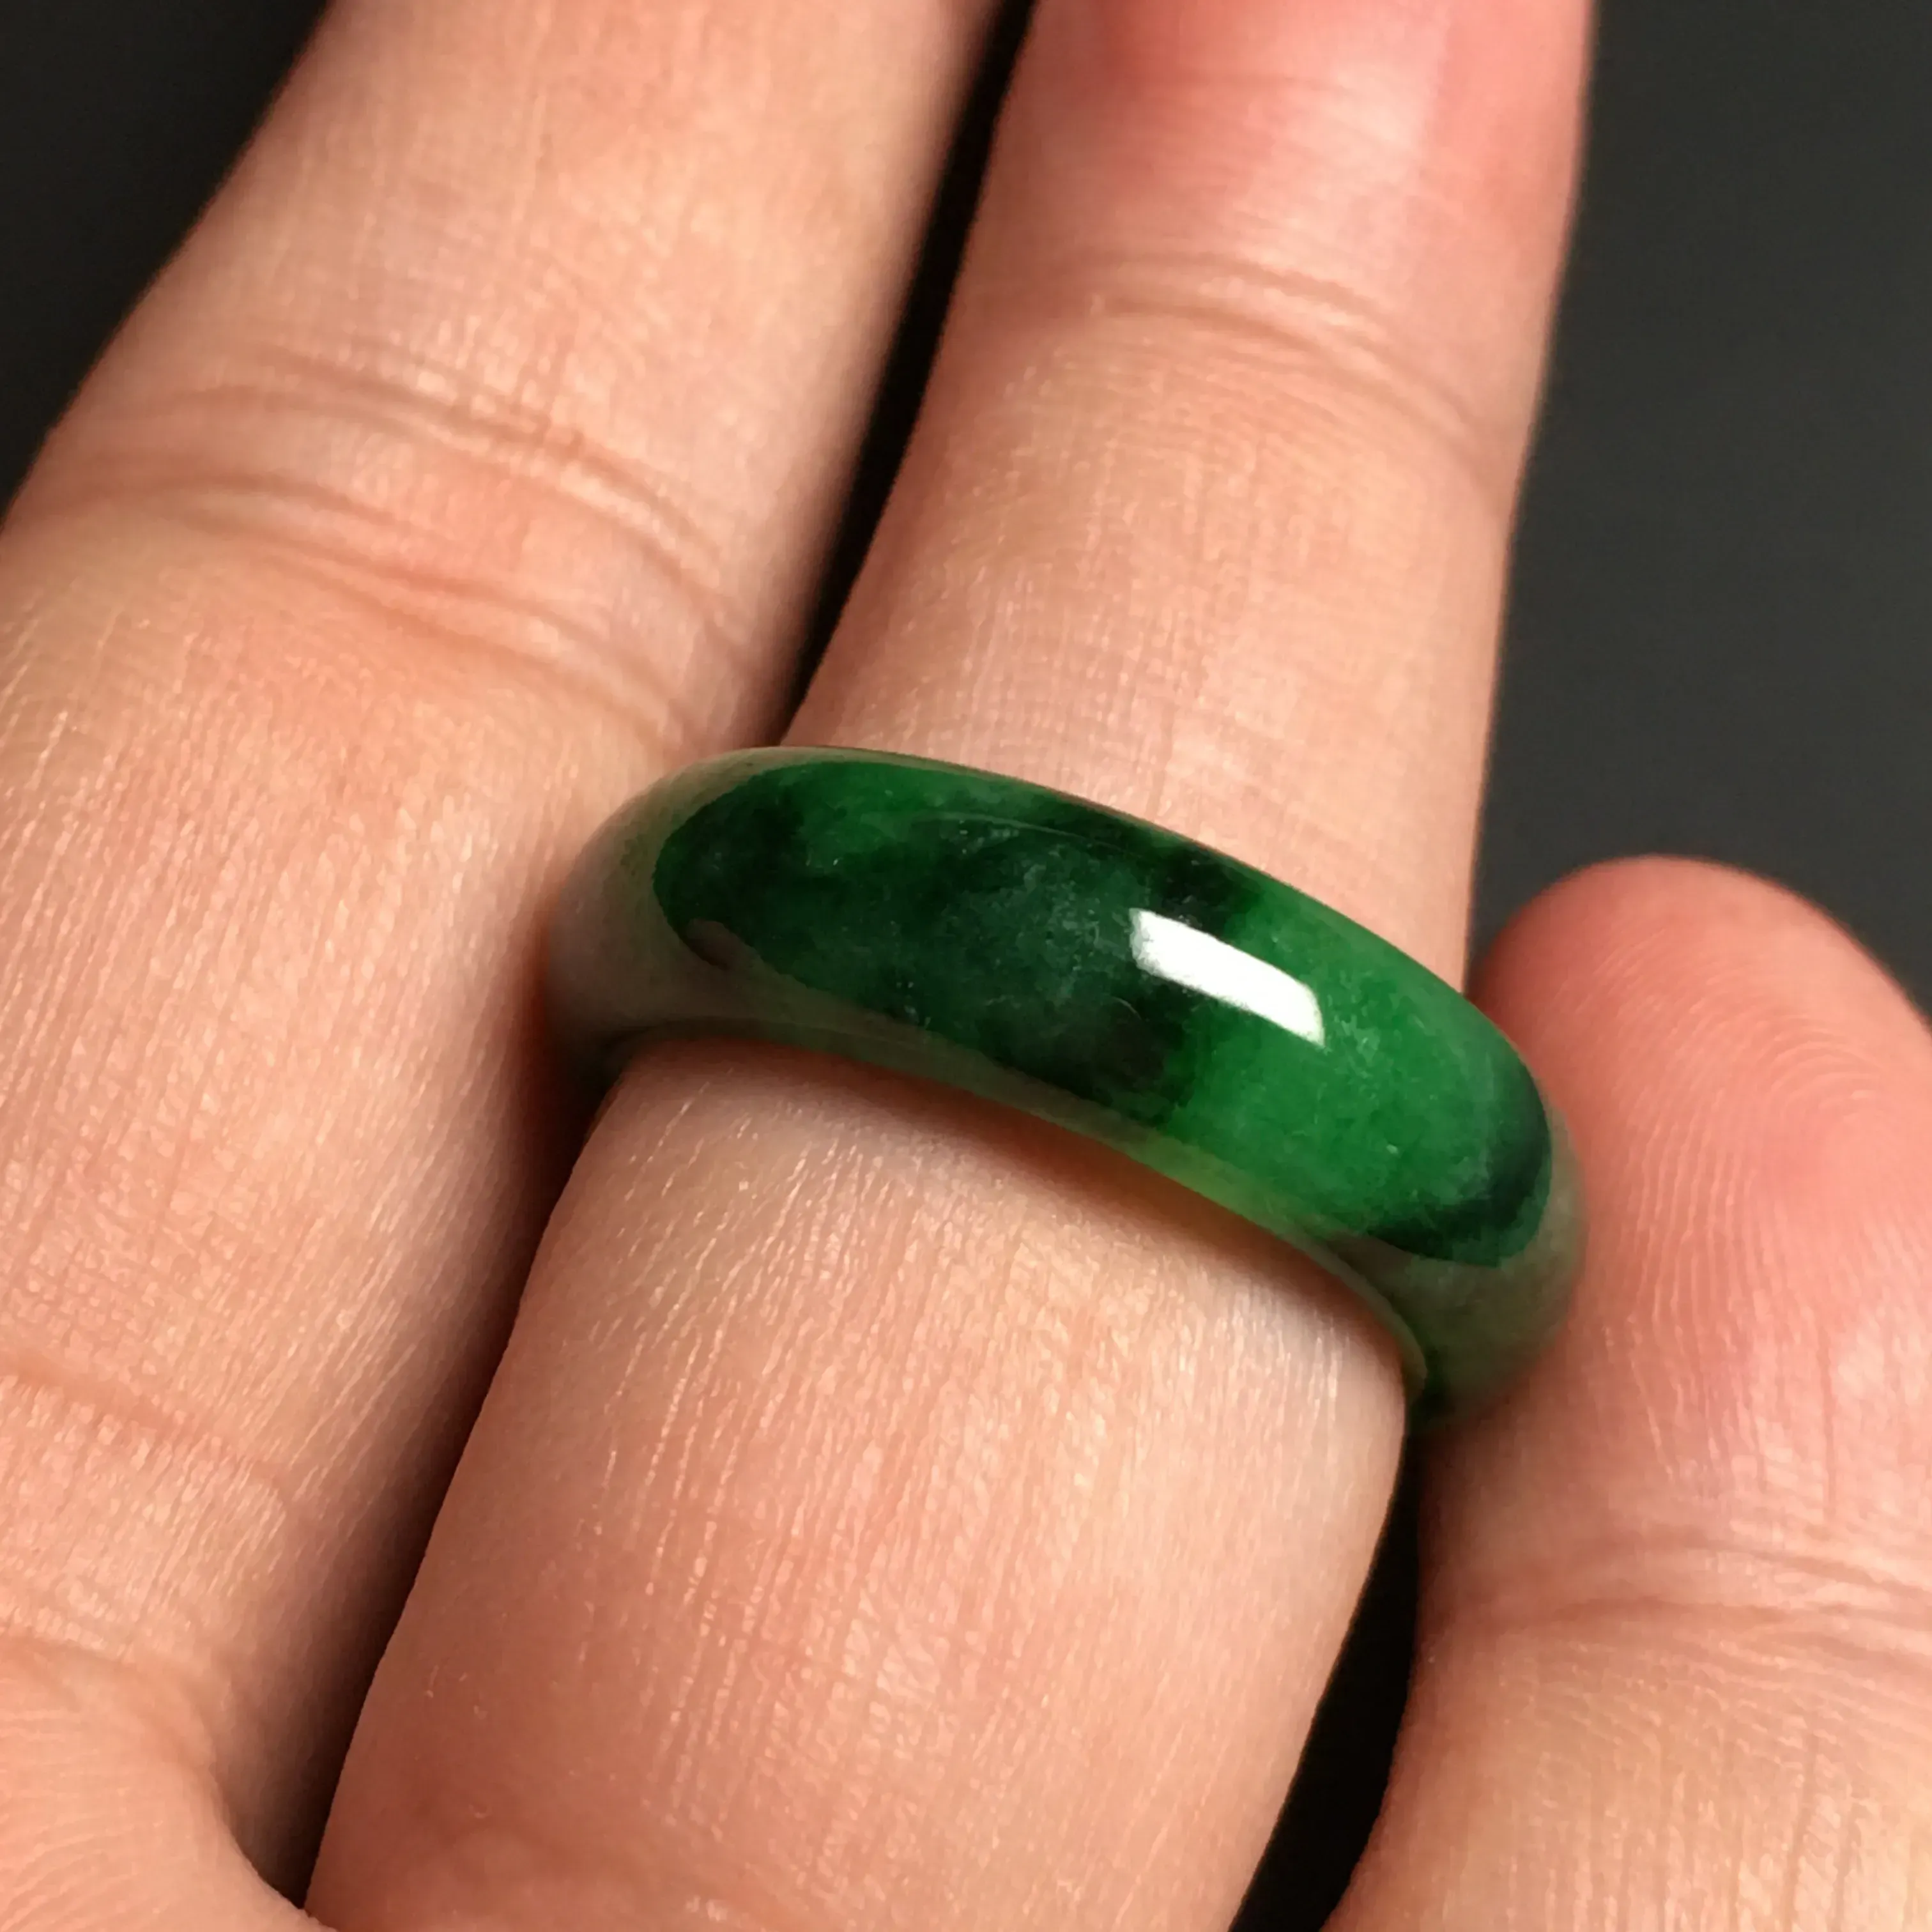 糯化种阳绿指环 内直径19.1毫米 外径25.6宽6.8厚3毫米 翠色艳丽 质地细腻 款式时尚